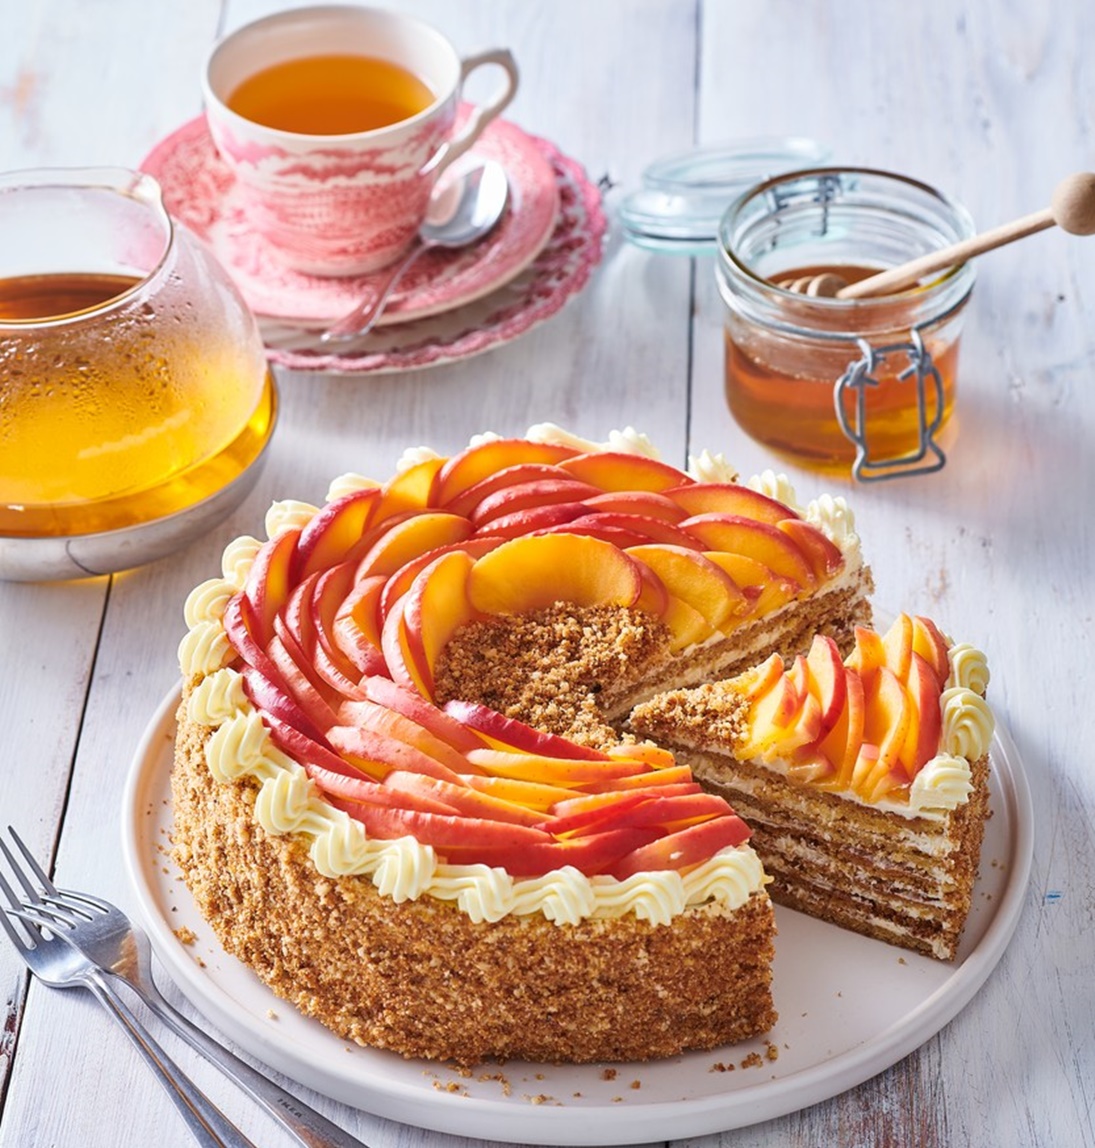 Tort Medovik secționat pe un platou alb, alături de cești cu ceai și un borcan cu miere